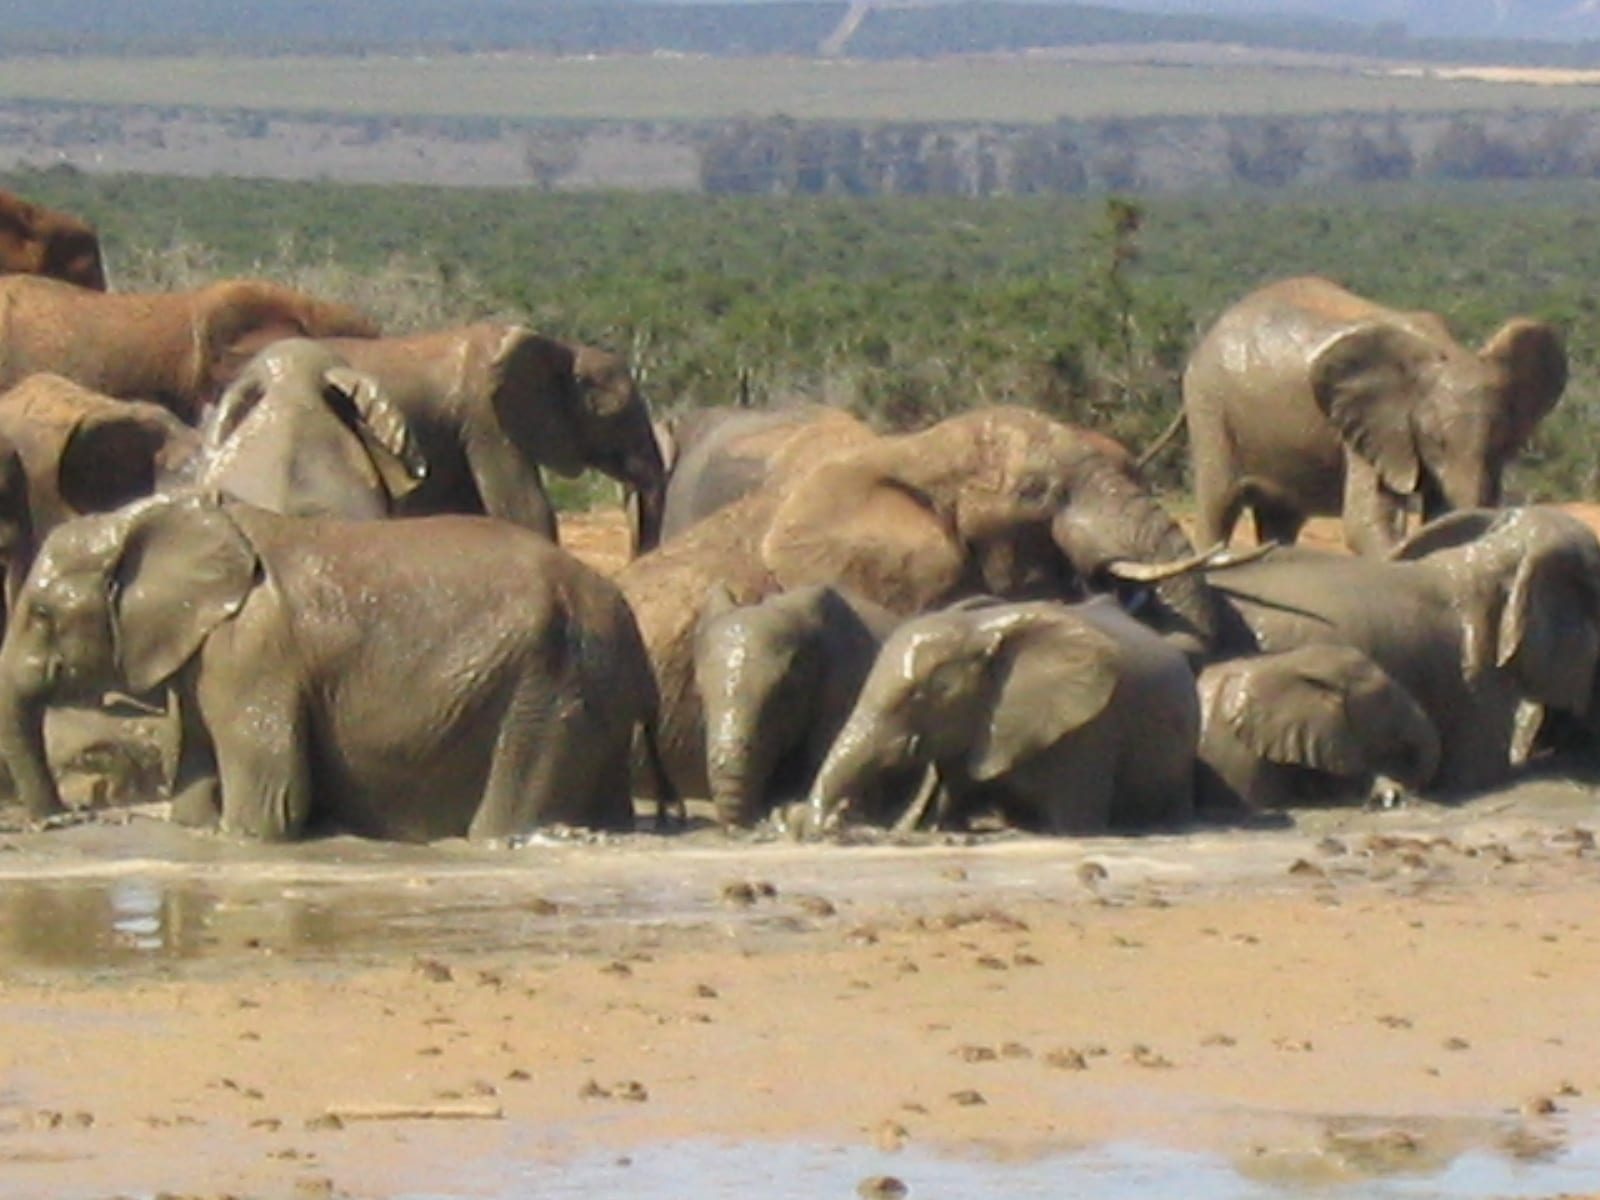 Addo Elephant Park, South Africa